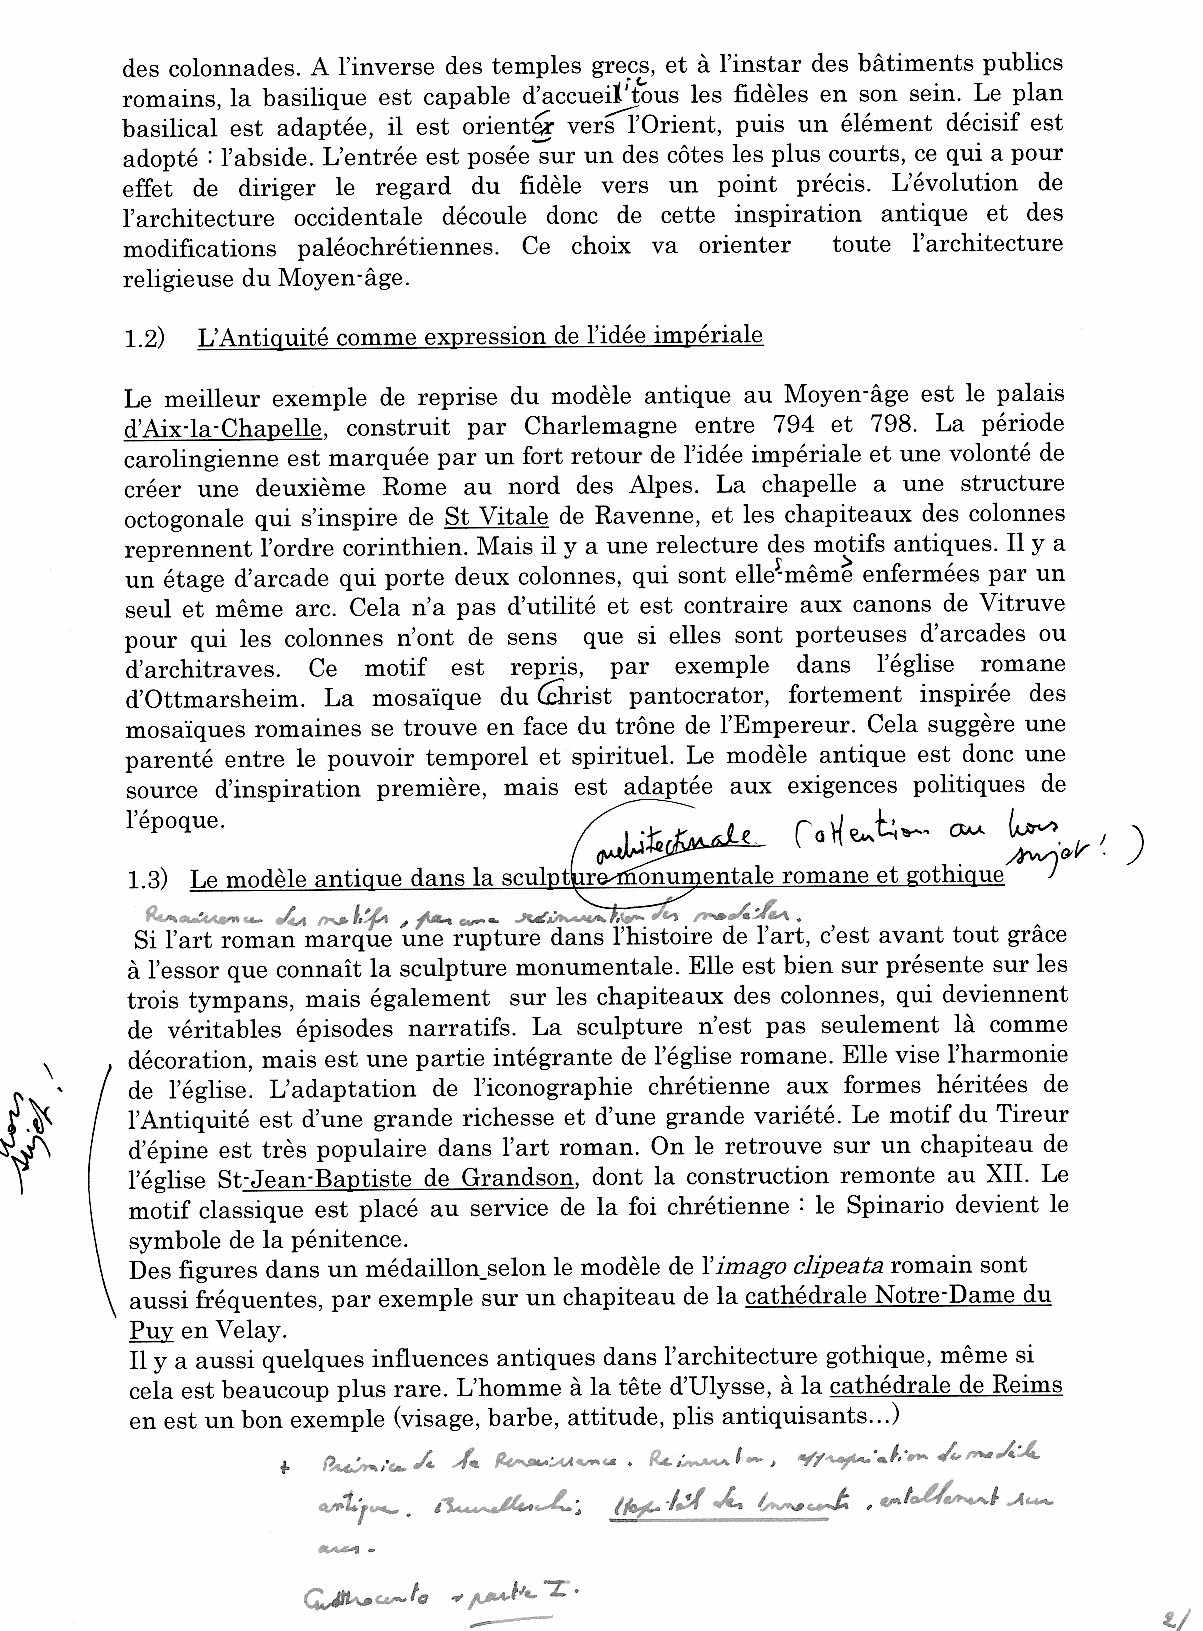 Sujets de dissertation, le modèle antique - Histoire des ...